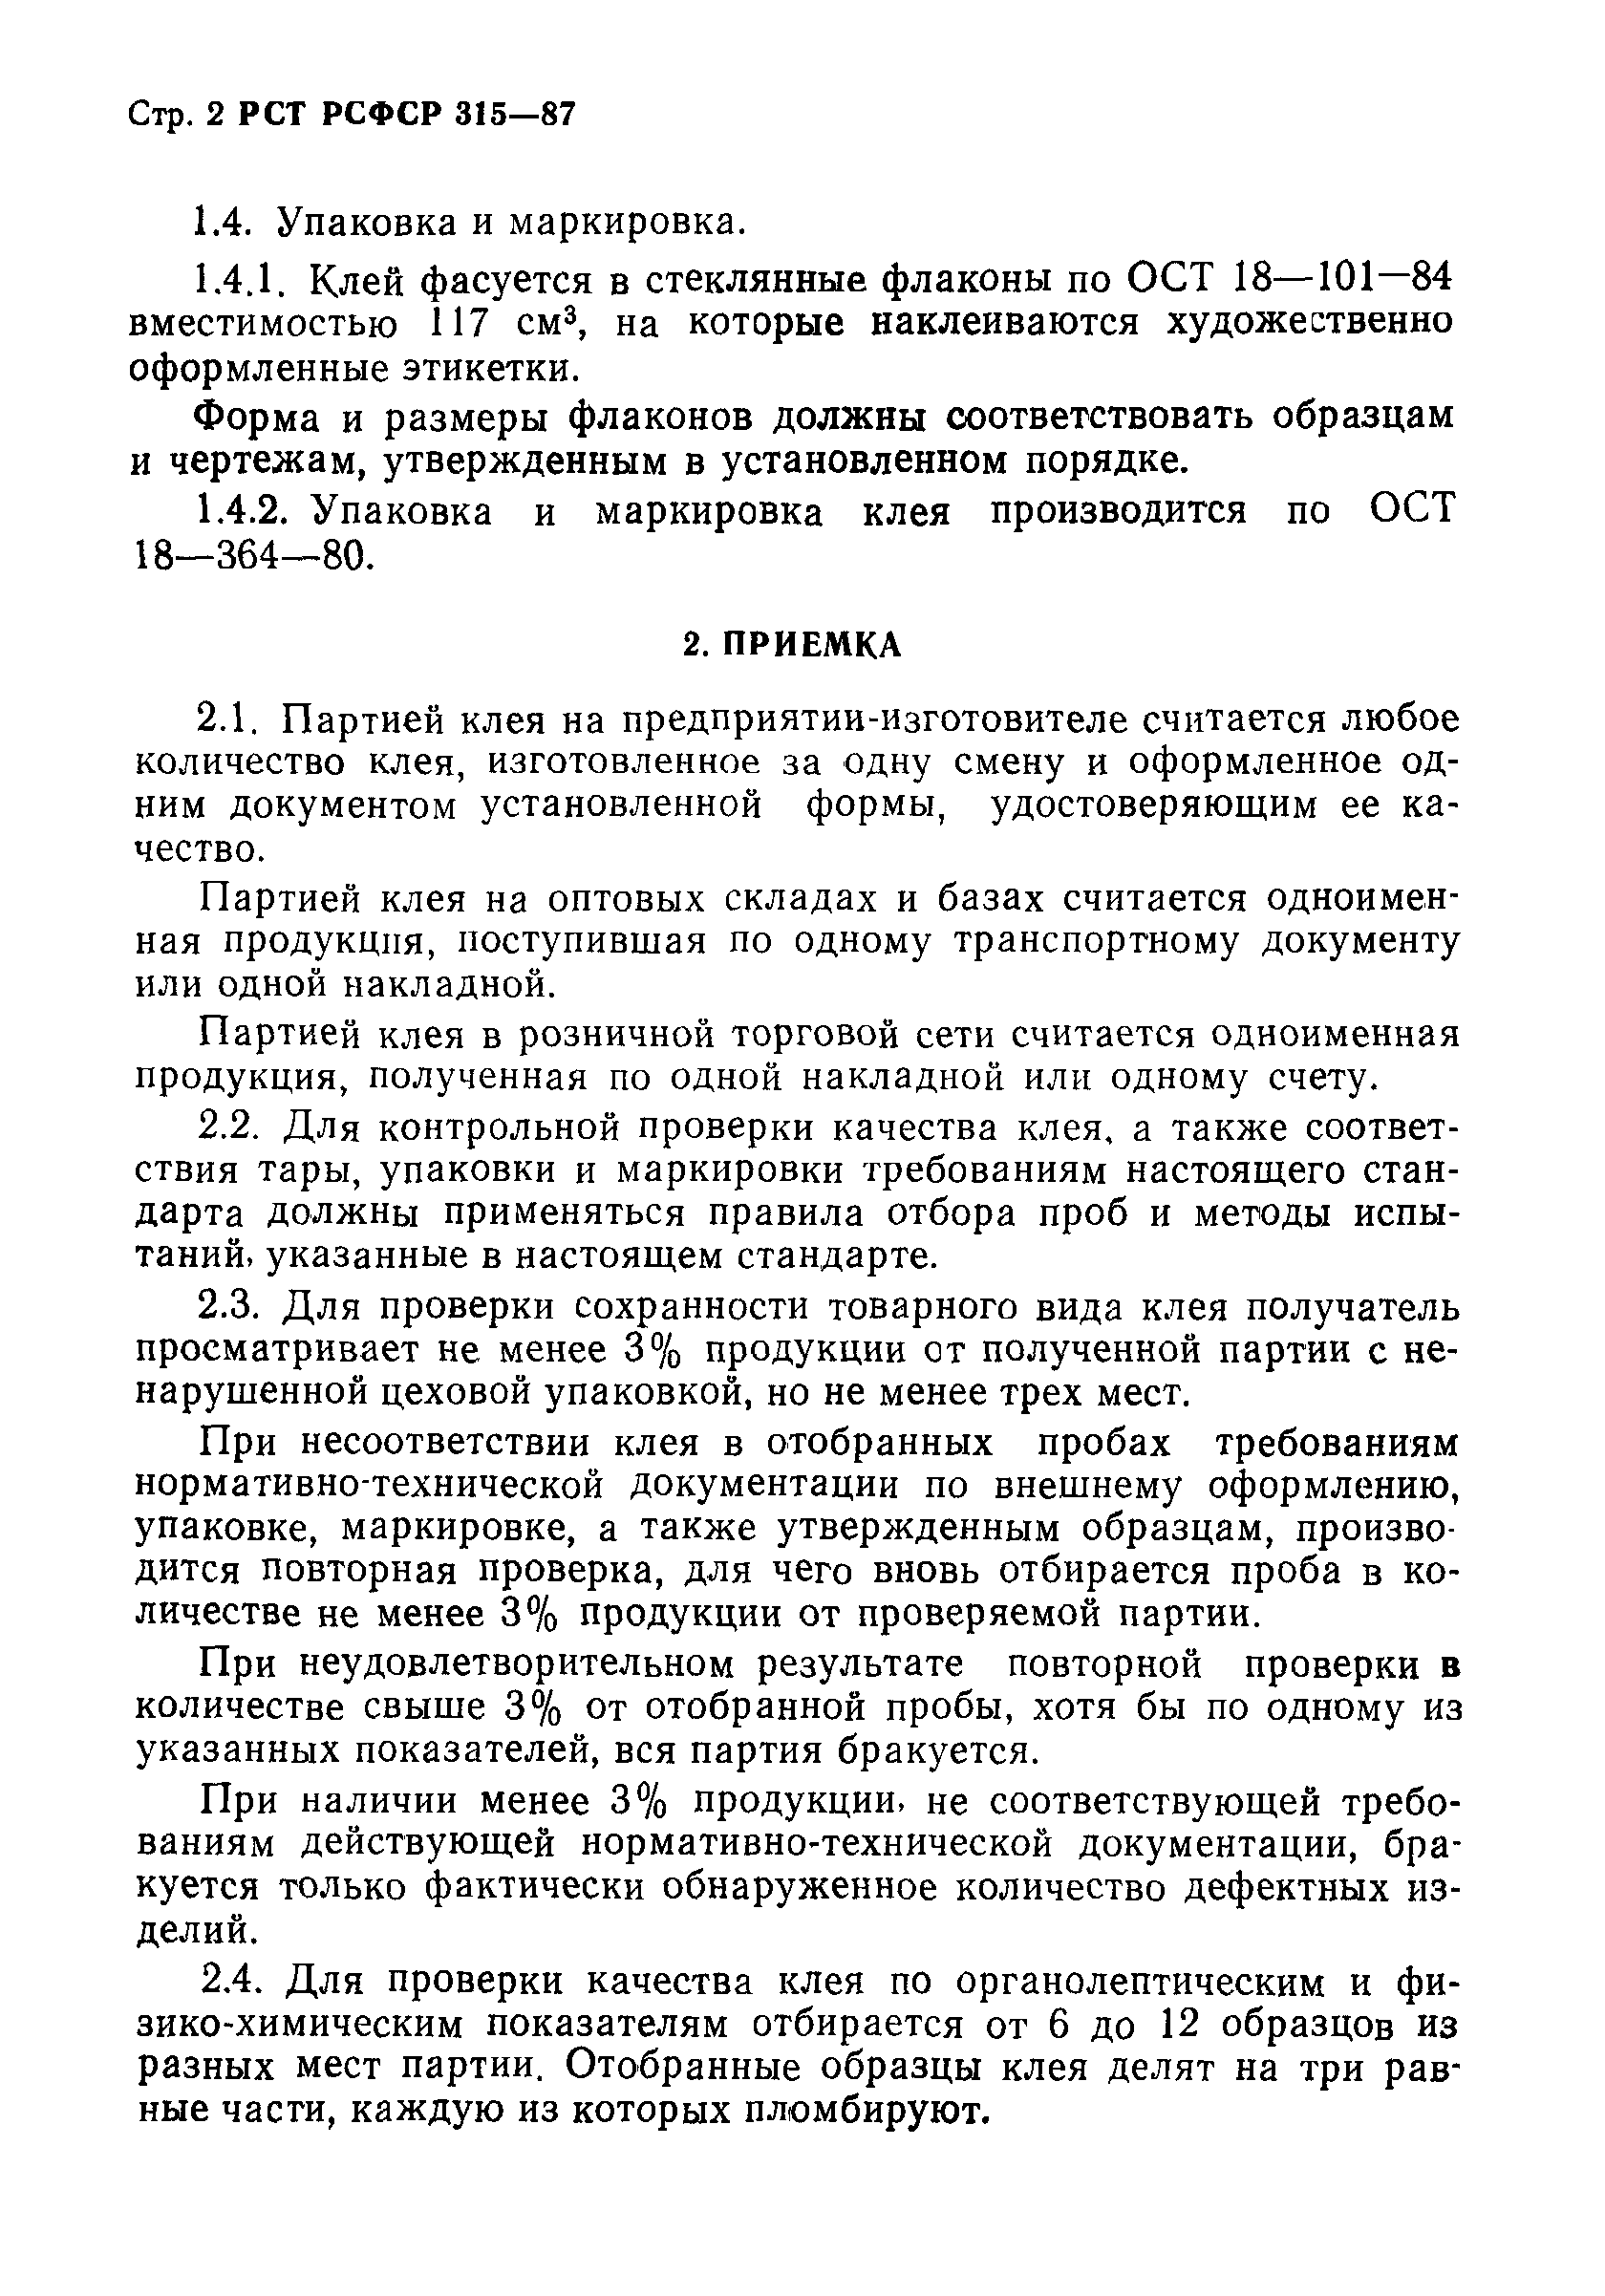 РСТ РСФСР 315-87